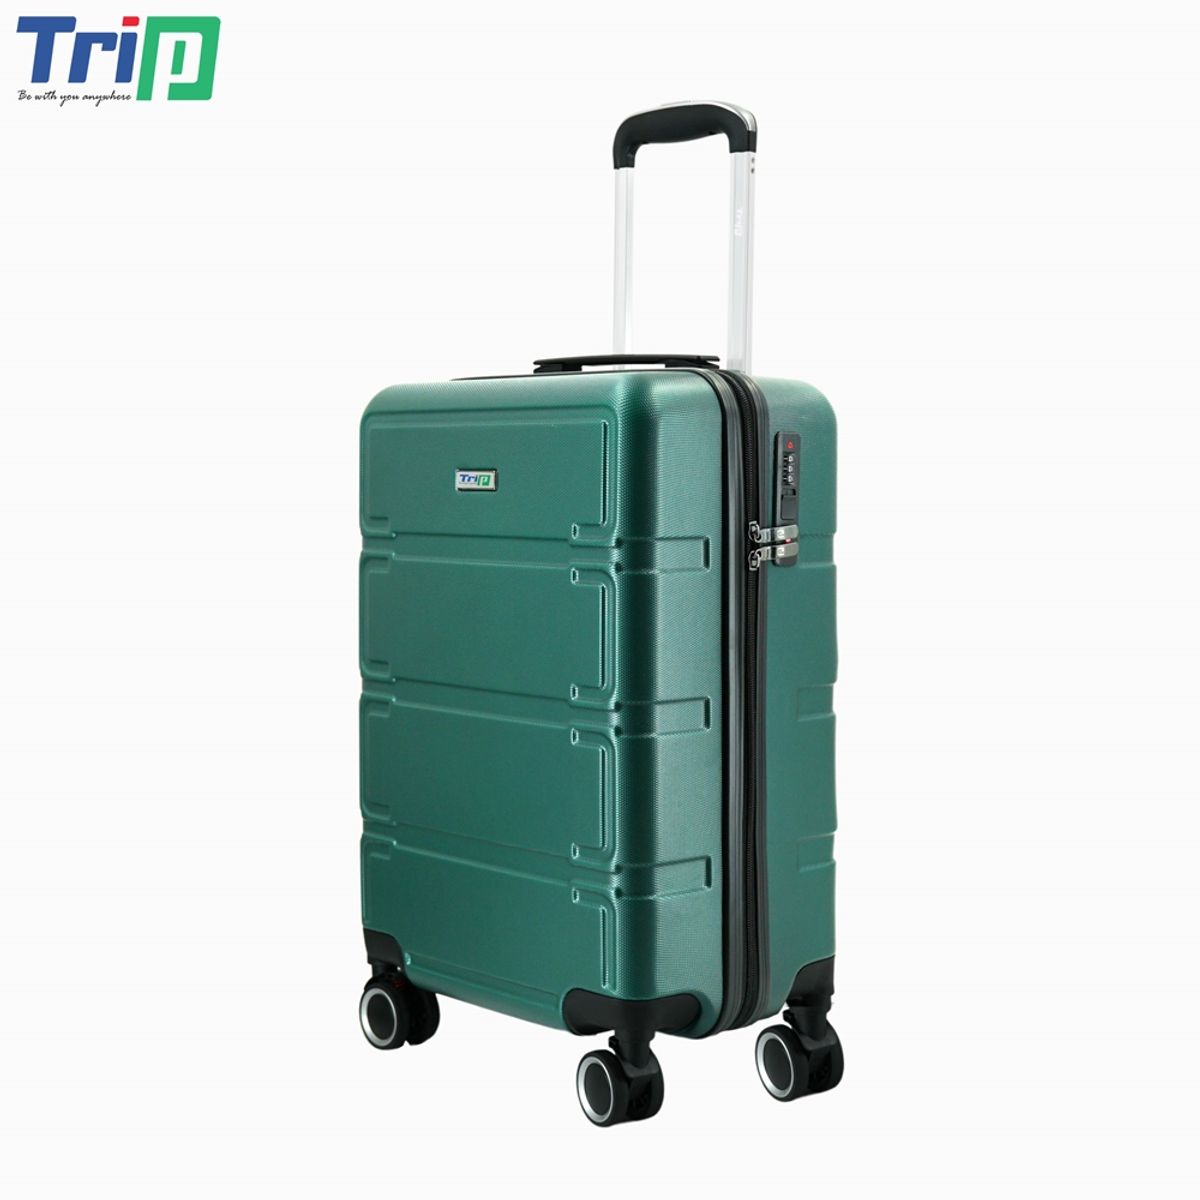 vali nhựa trip p806 size 24 inch, có khóa bảo mật, bảo hành 5 năm - freeship 6